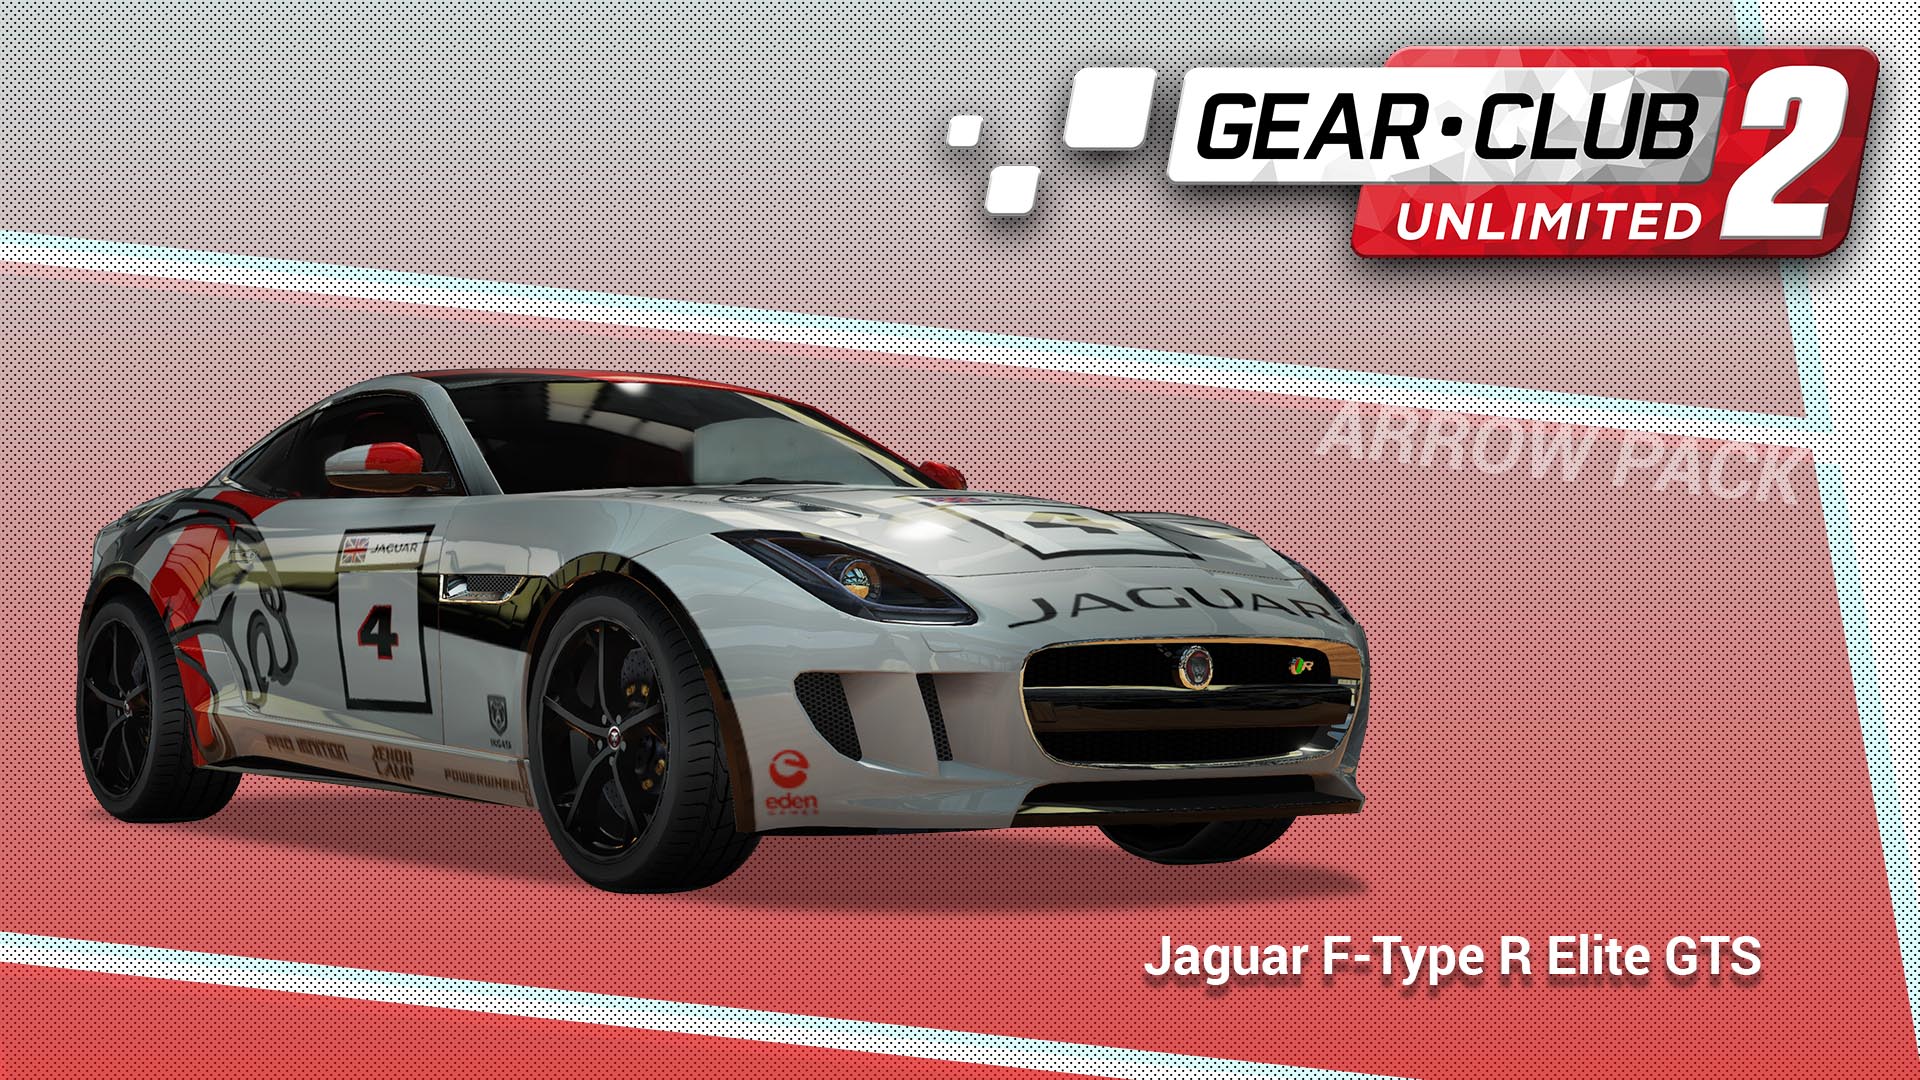 Jaguar F-Type R Elite GTS - Gear.Club Unlimited 2